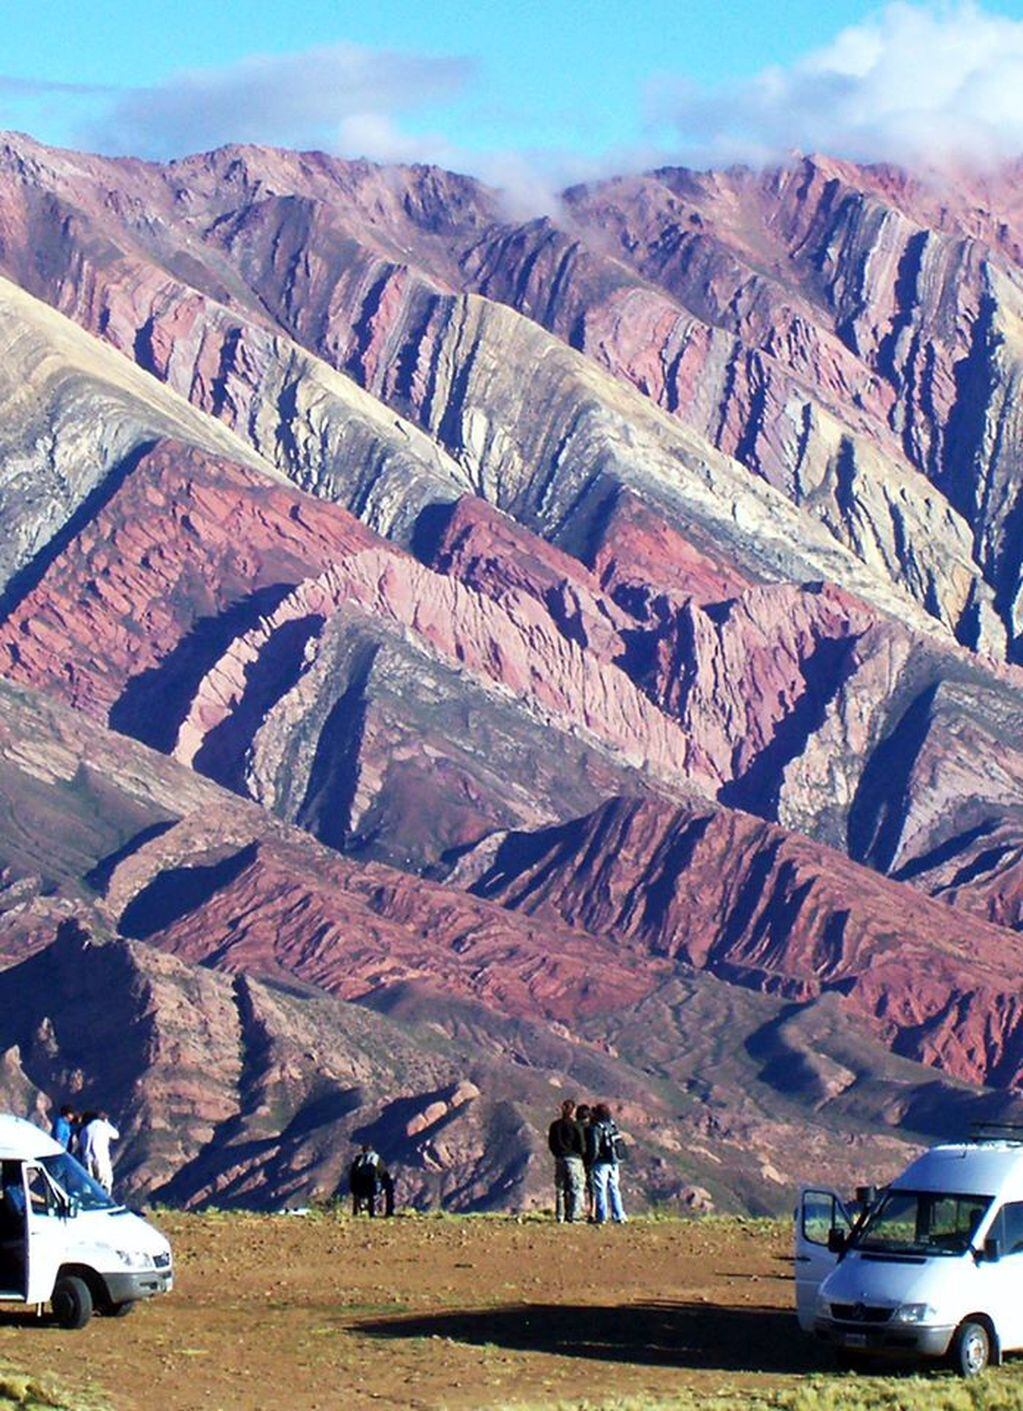 Viajeros de todas las latitudes se maravillan con la vista en la serranía del Hornocal, en Humahuaca.